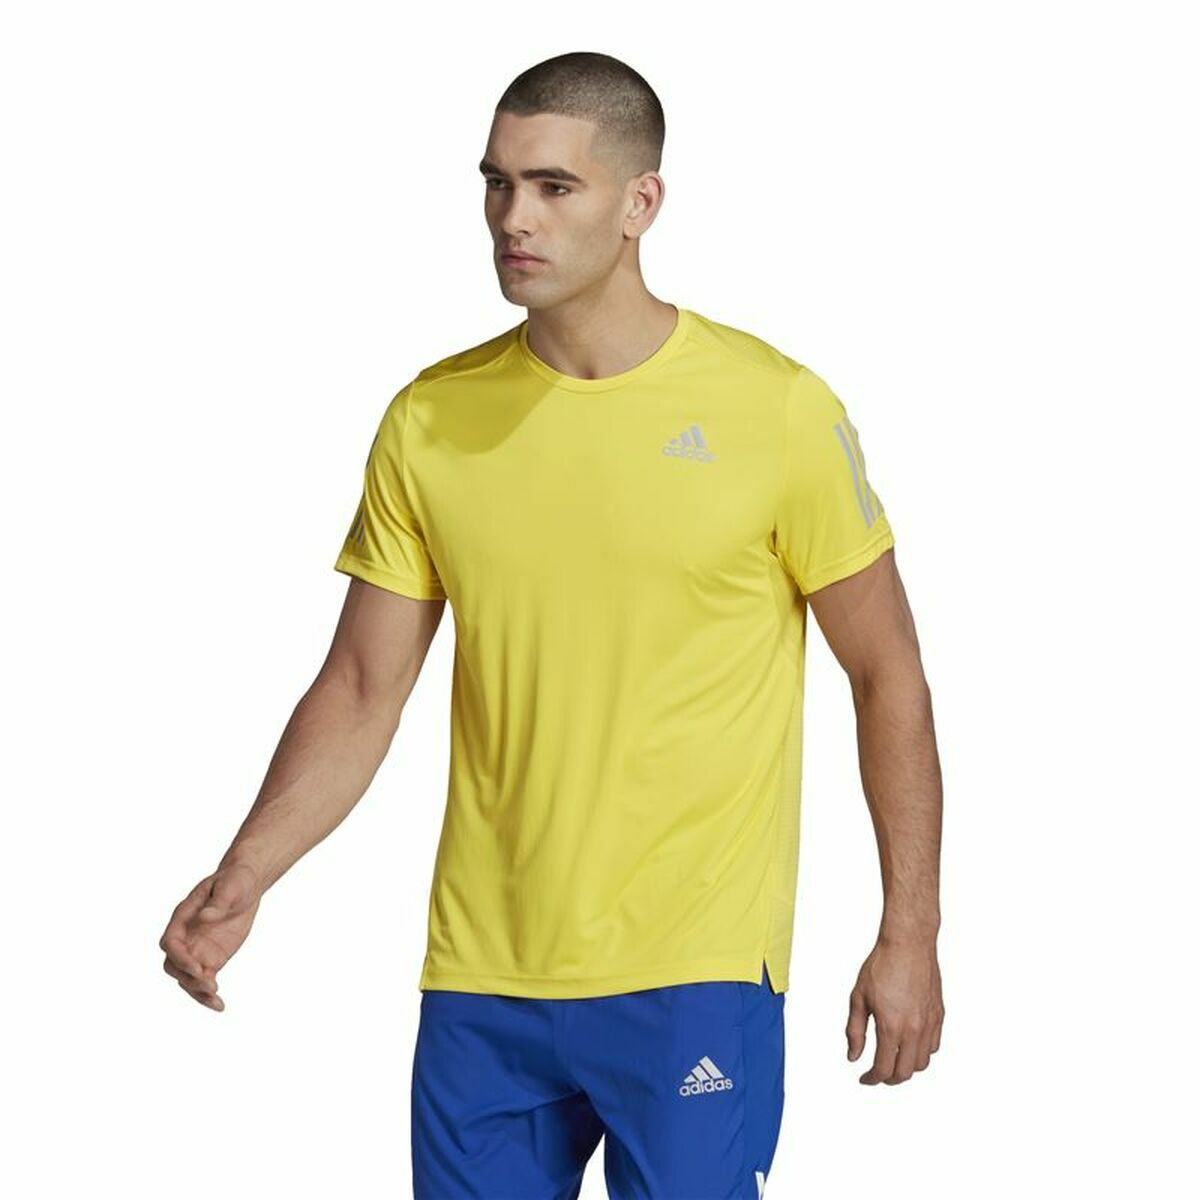 Osta tuote Miesten T-paita Adidas  Graphic Tee Shocking Keltainen (Koko: M) verkkokaupastamme Korhone: Urheilu & Vapaa-aika 20% alennuksella koodilla VIIKONLOPPU